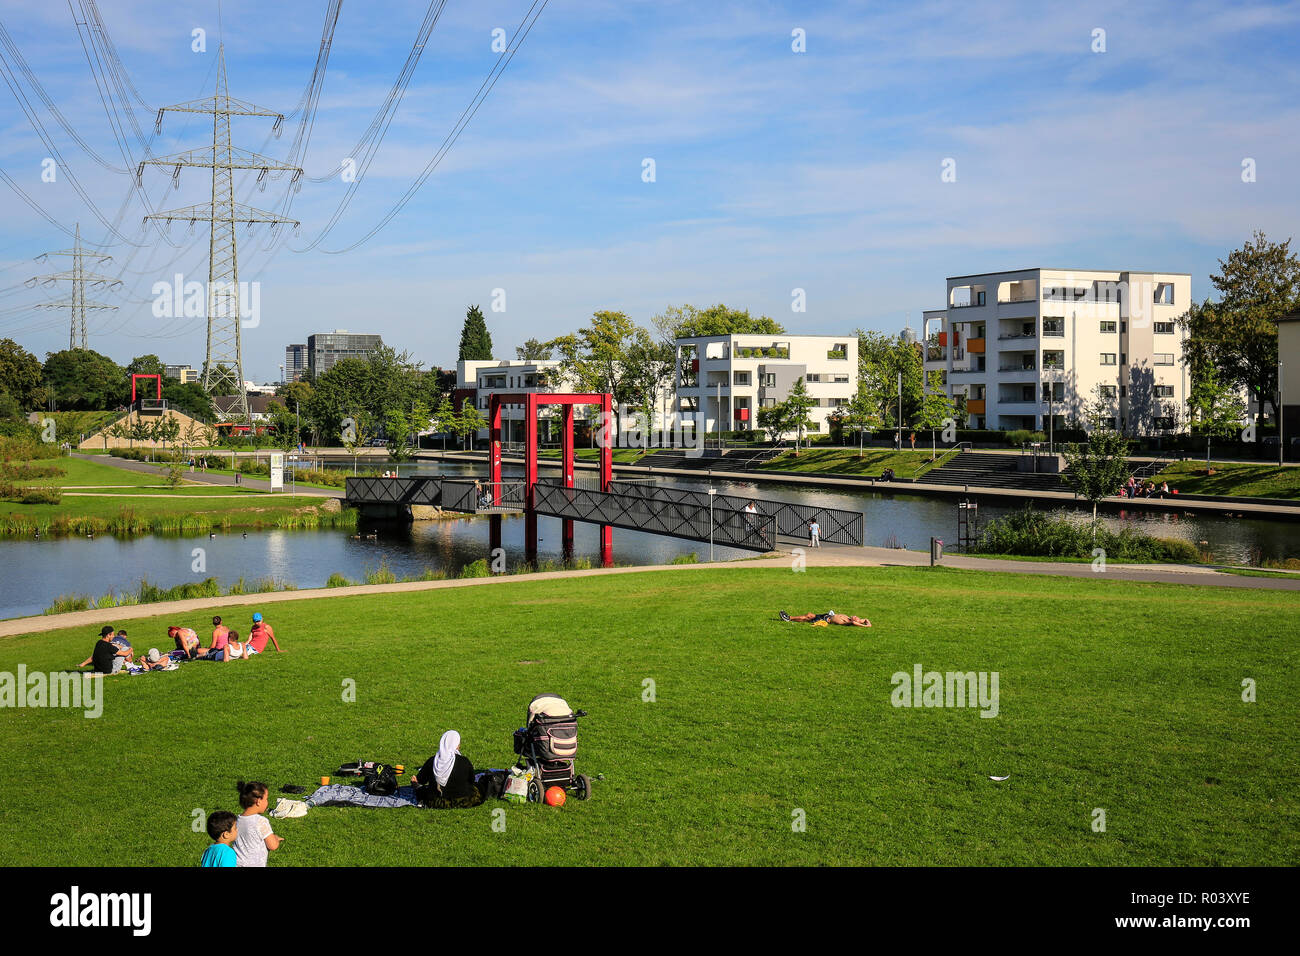 Essen, área de Ruhr, Alemania, el proyecto de desarrollo urbano con ciclo ruta Niederfeldsee Ruhr RS 1 Foto de stock